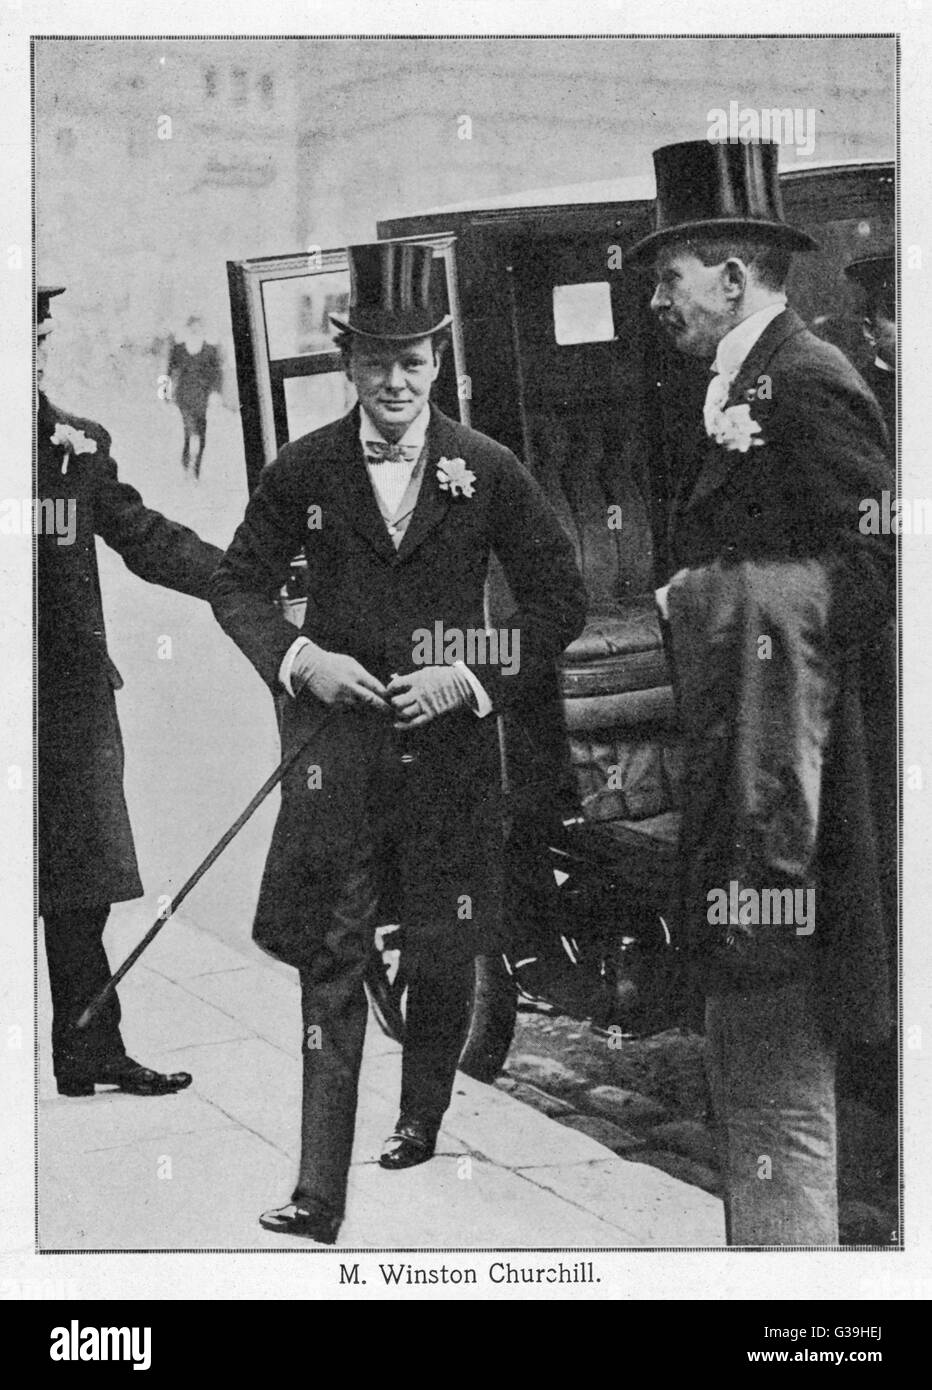 WINSTON CHURCHILL trifft in der Kirche am Tag seiner Hochzeit ein Gehrock mit Knopfloch, Fliege, Hut, Handschuhe und engen Hosen zu tragen.     Datum: 1908 Stockfoto